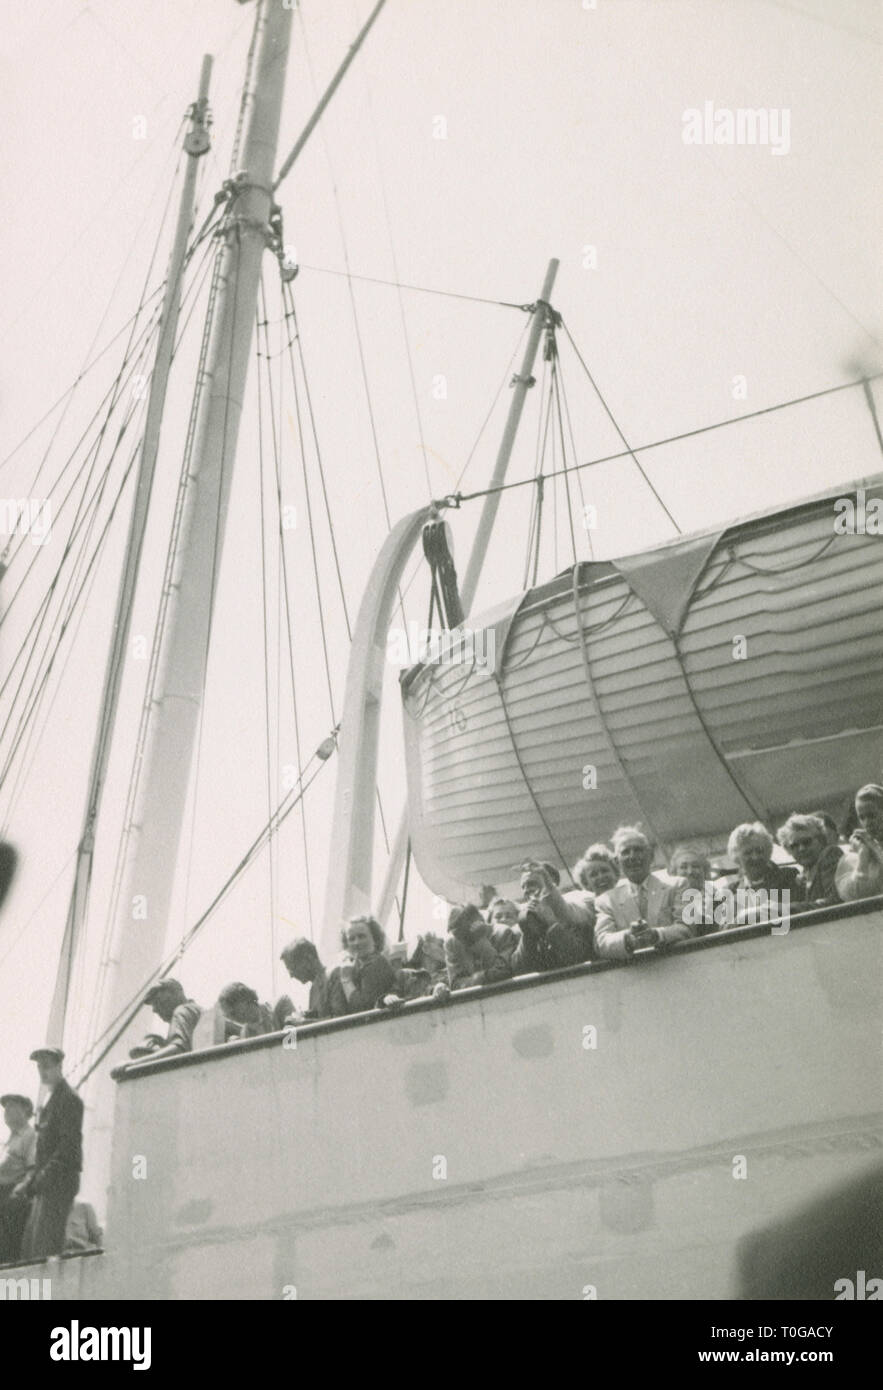 Antike c 1930 Foto, Reisende an der Schiene eines ankommenden Dampfschiff. Standort unbekannt, USA. Quelle: original Foto. Stockfoto